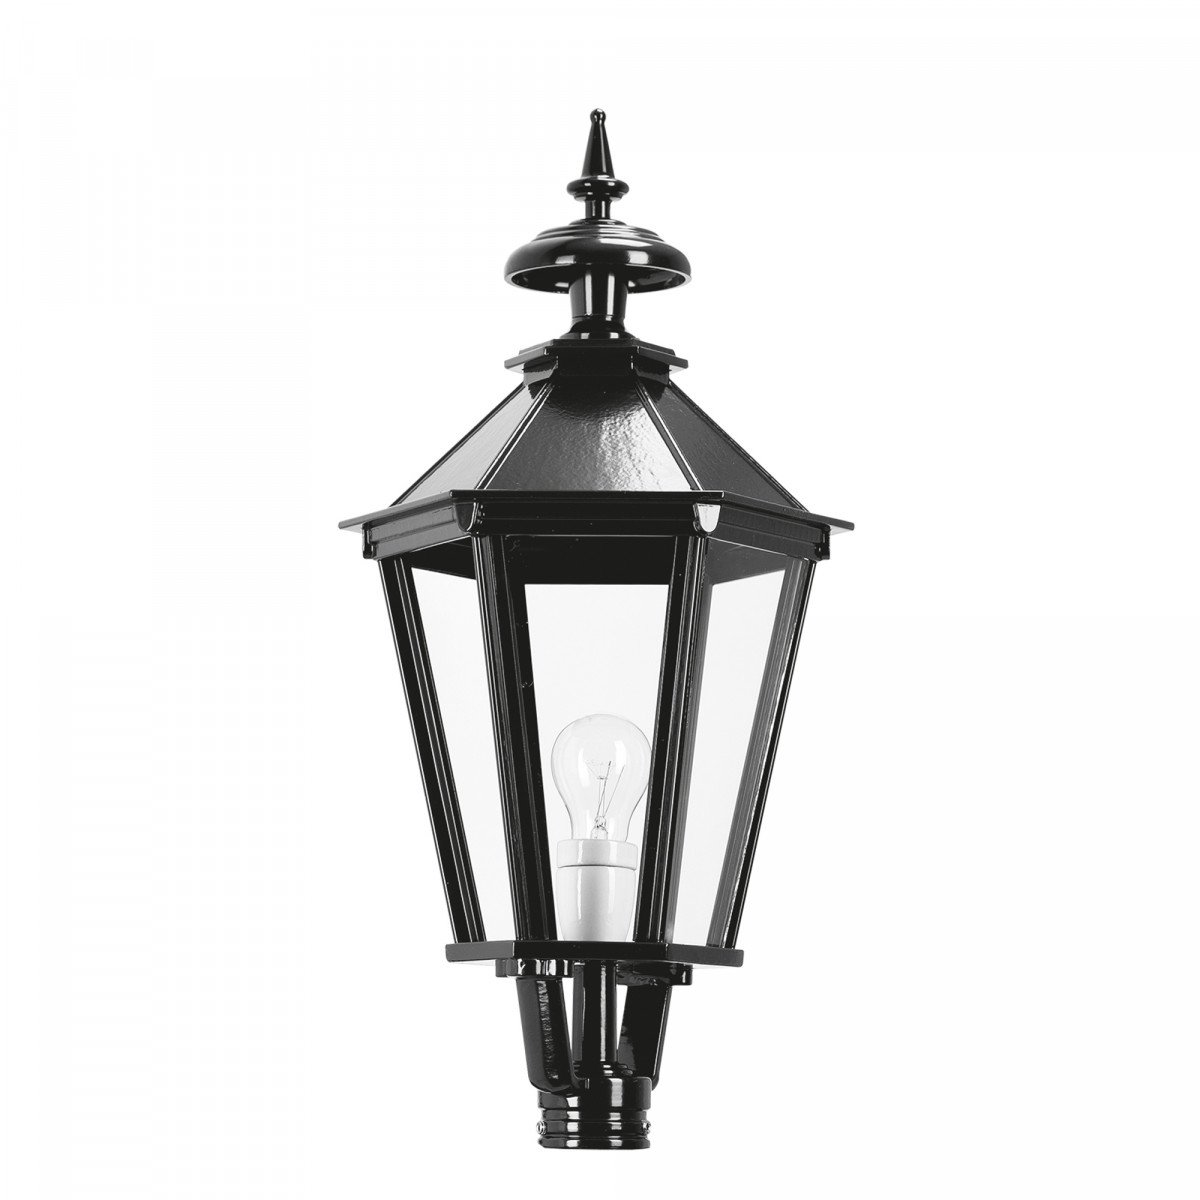 Lanterne K7A hexagonale (1505) éclairage d'extérieur  de KS Lighting - Abat-jour, poteaux, supports